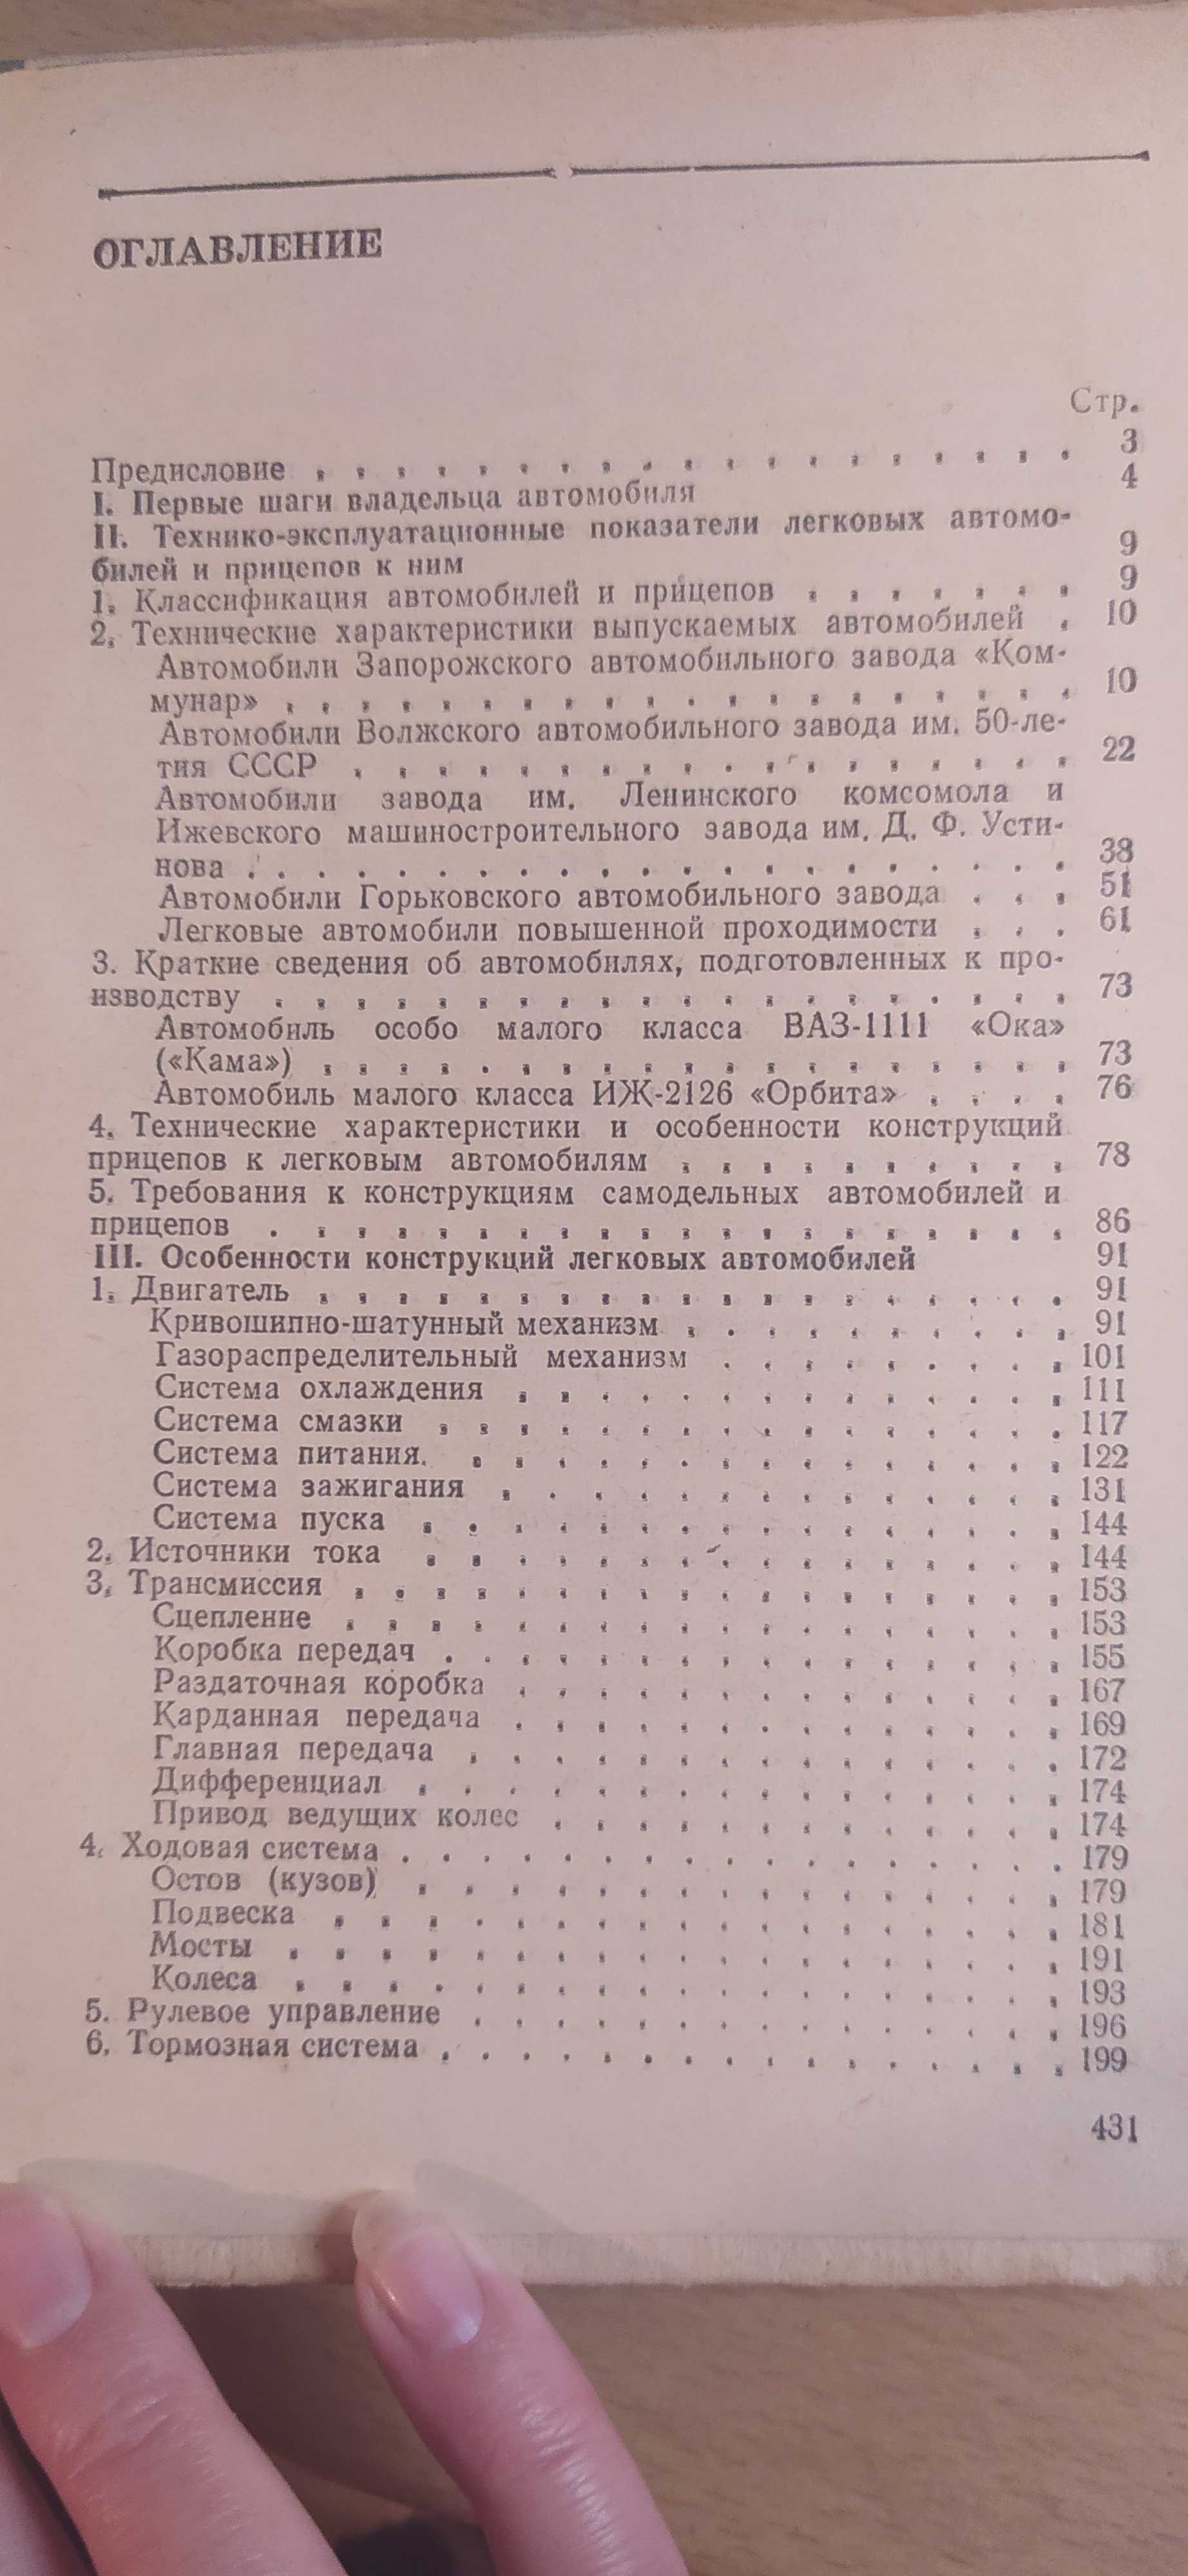 Книга Справочник автолюбителя авто ЗАЗ ВАЗ ГАЗ 1990 года выпуска